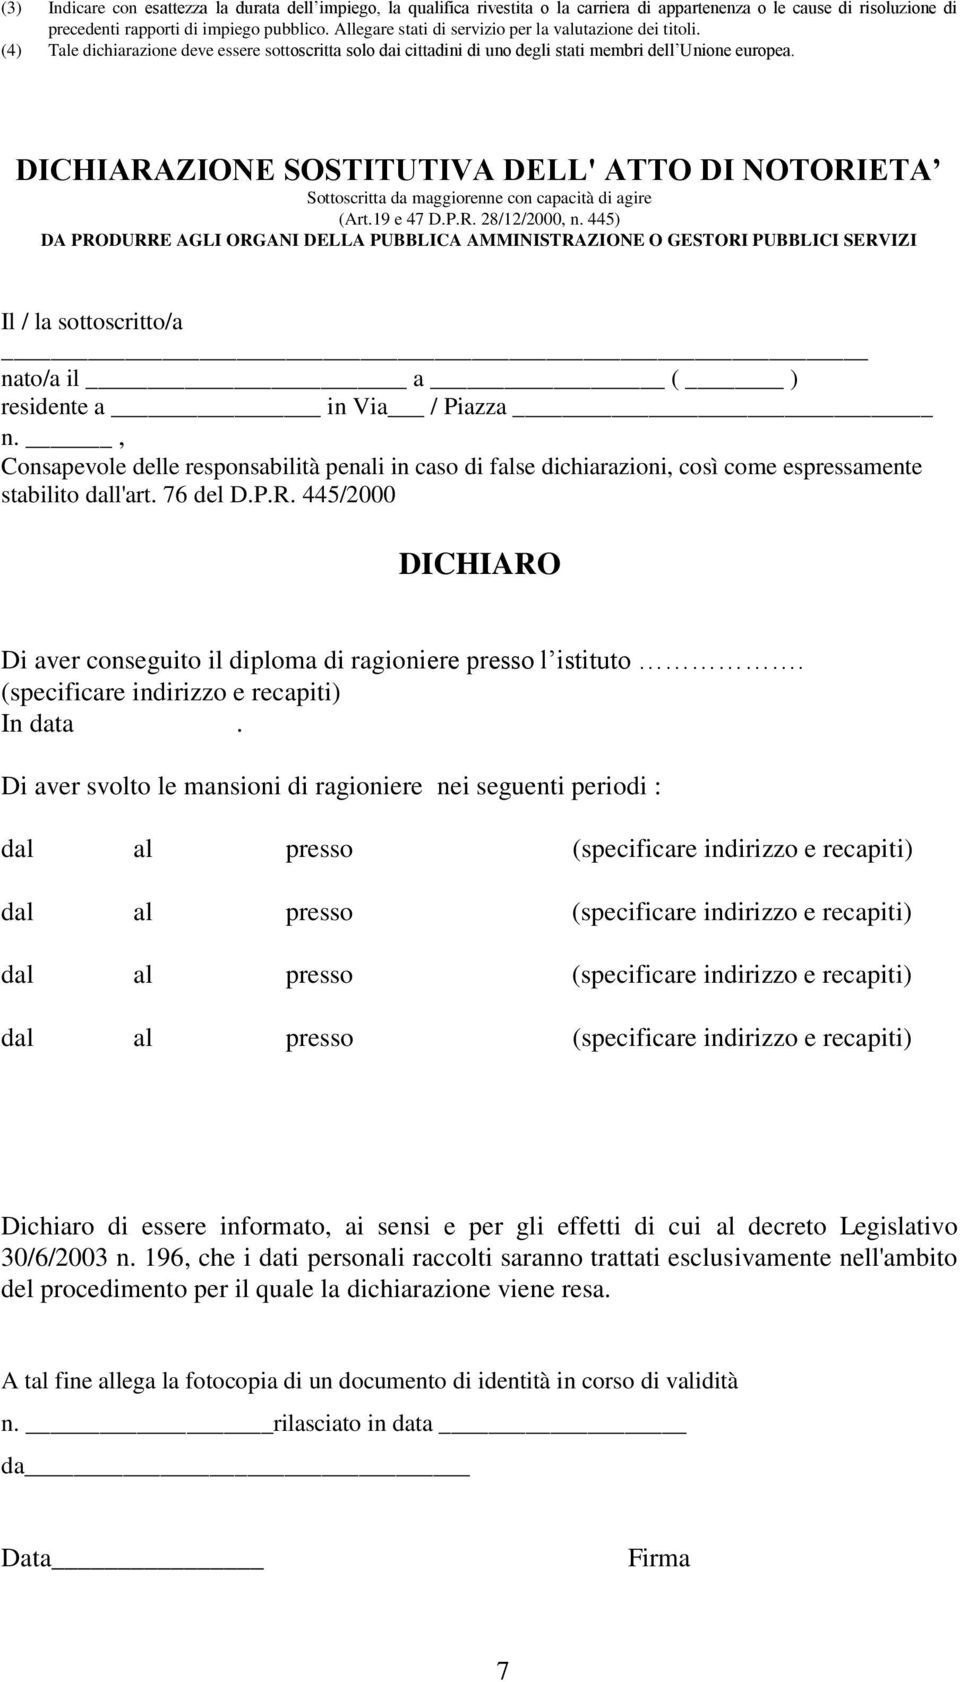 DICHIARAZIONE SOSTITUTIVA DELL' ATTO DI NOTORIETA Sottoscritta da maggiorenne con capacità di agire (Art.19 e 47 D.P.R. 28/12/2000, n.